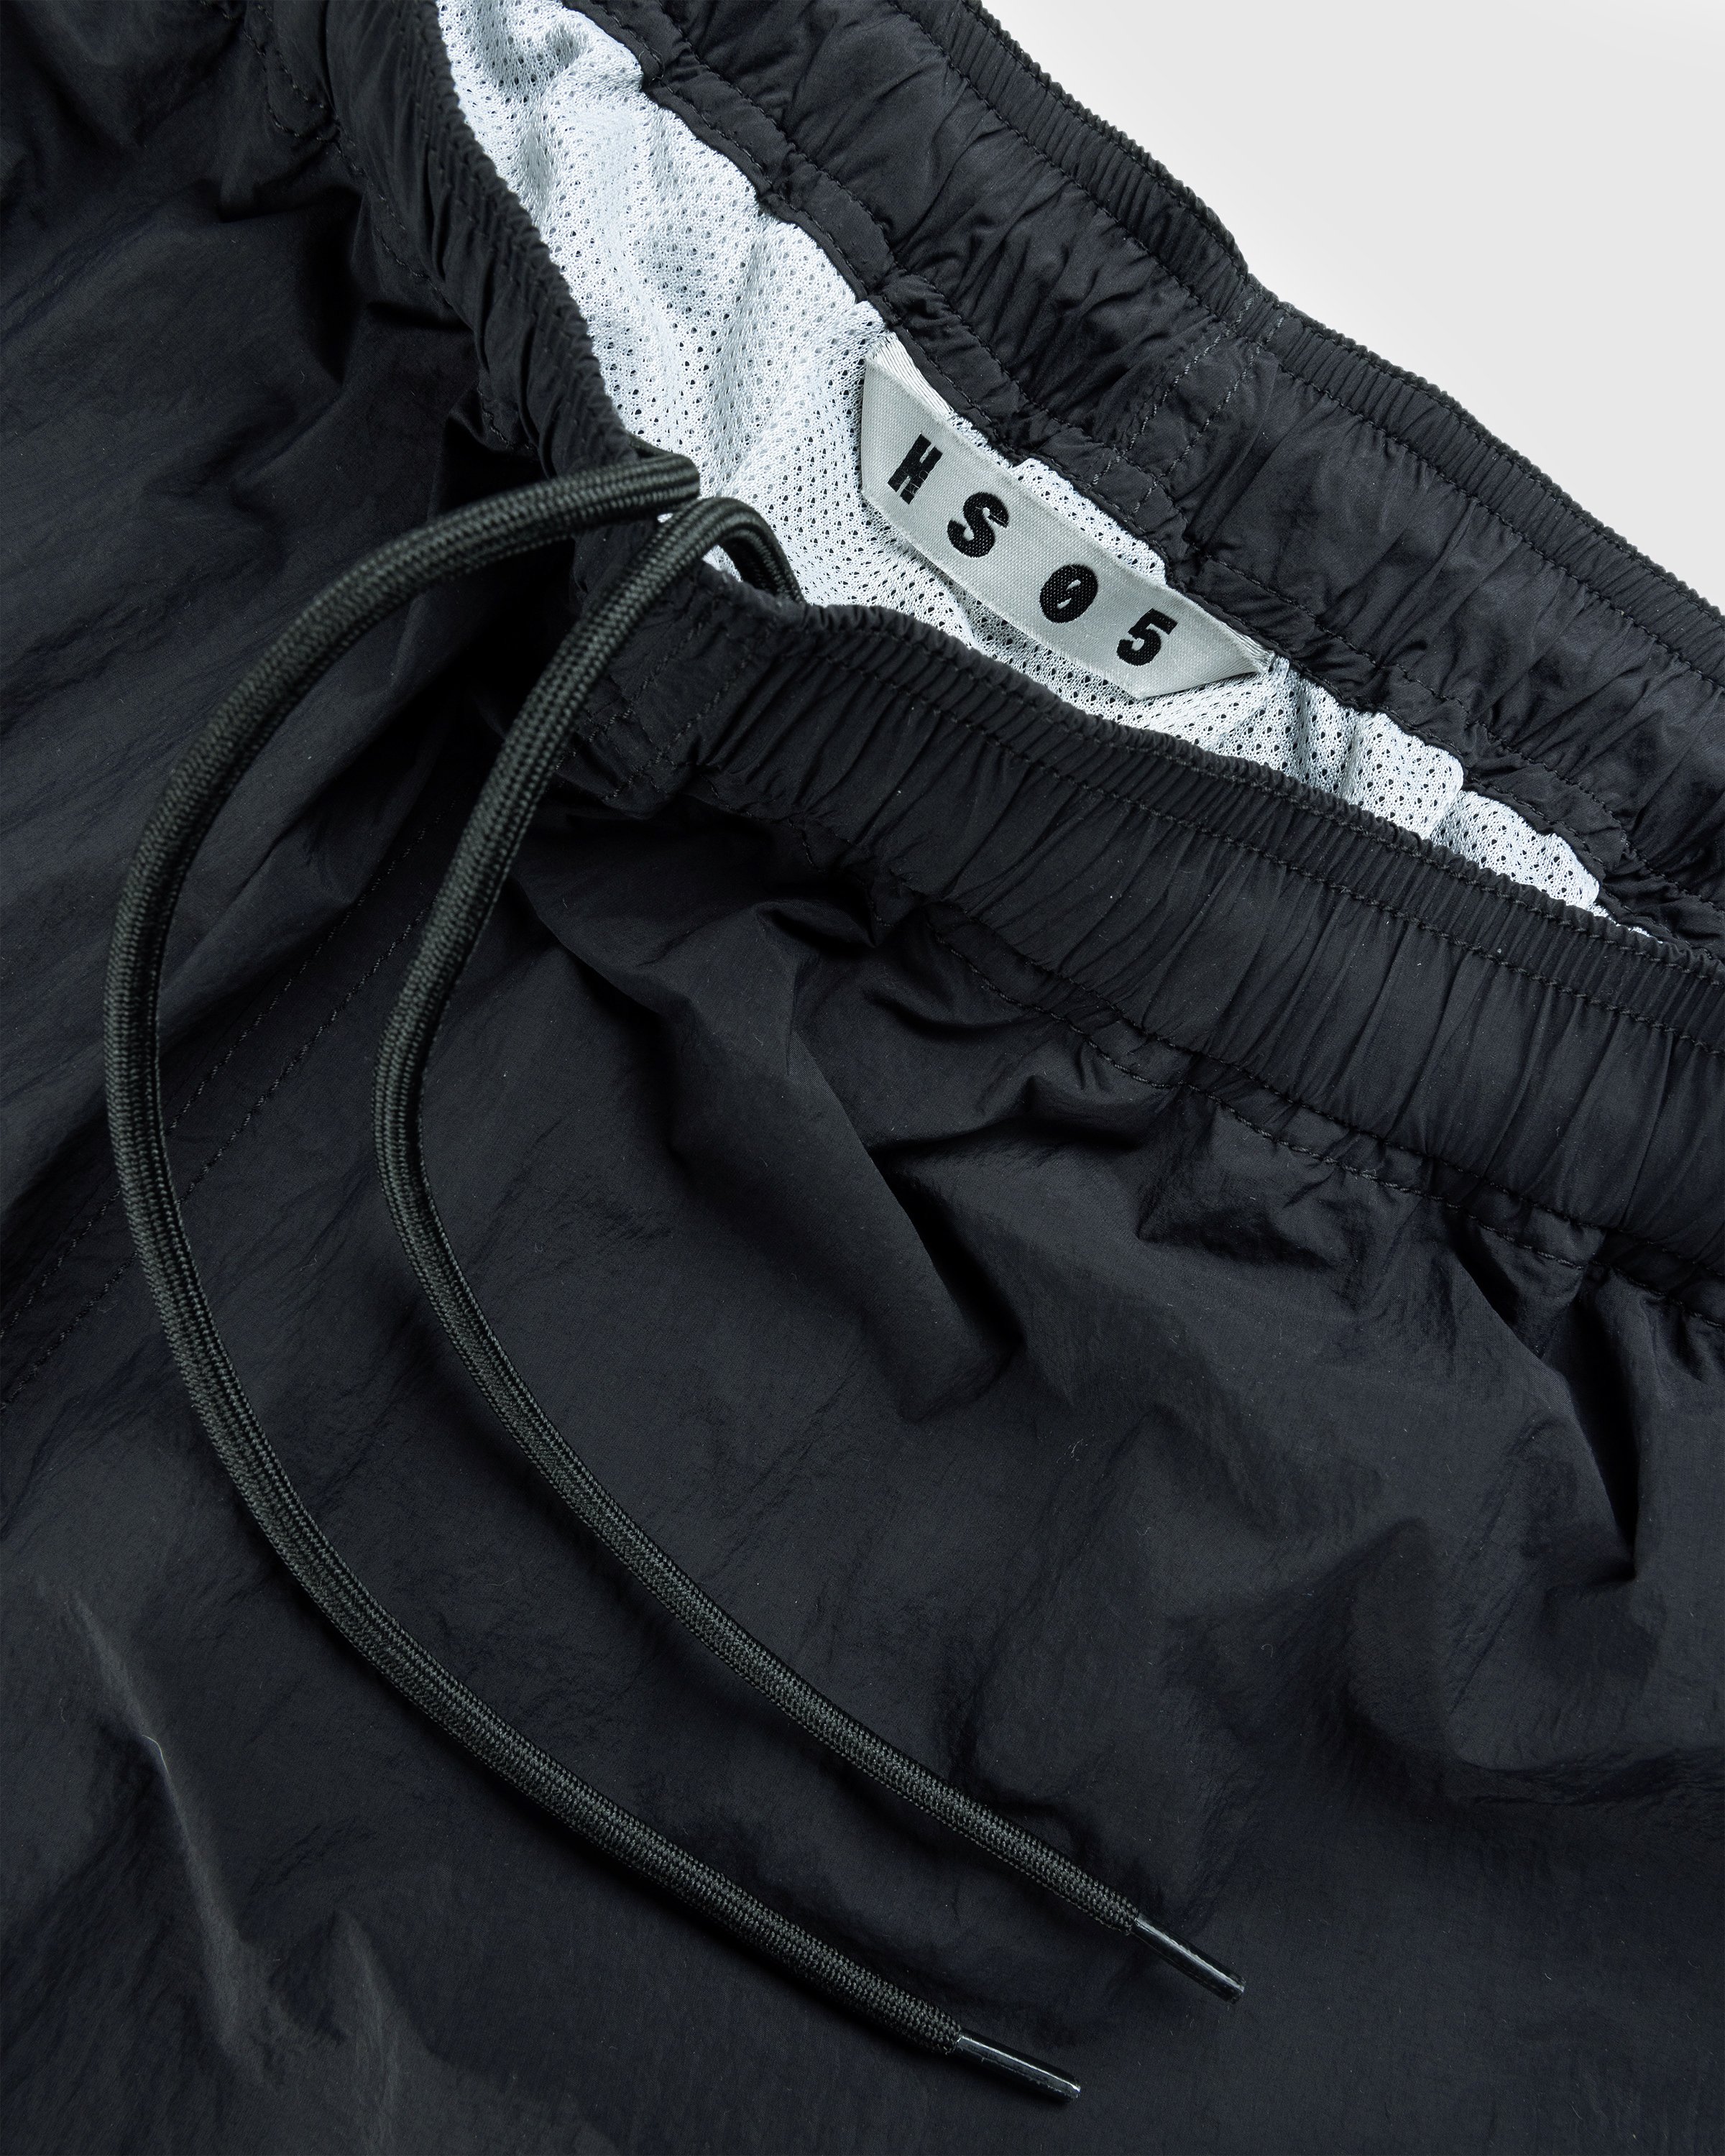 Highsnobiety HS05 - Natural Dyed Nylon Shorts Black - Clothing - Black - Image 7